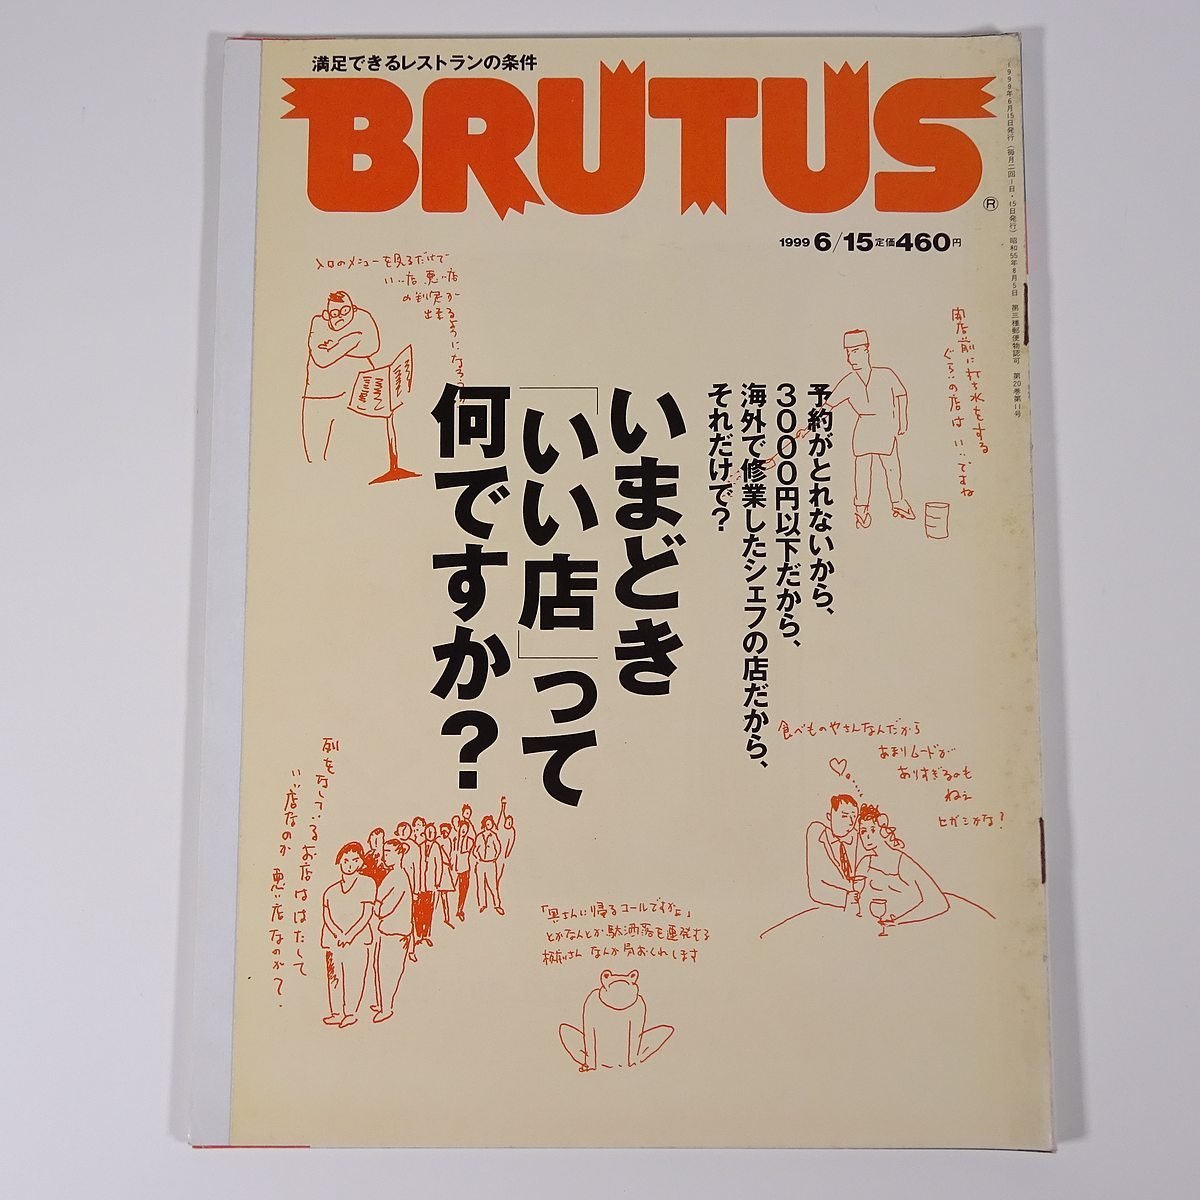 BRUTUS ブルータス 434号 1999/6/15 マガジンハウス 雑誌 情報誌 ライフスタイル 特集・いまどっき「いい店」って何ですか？ ほか_画像1